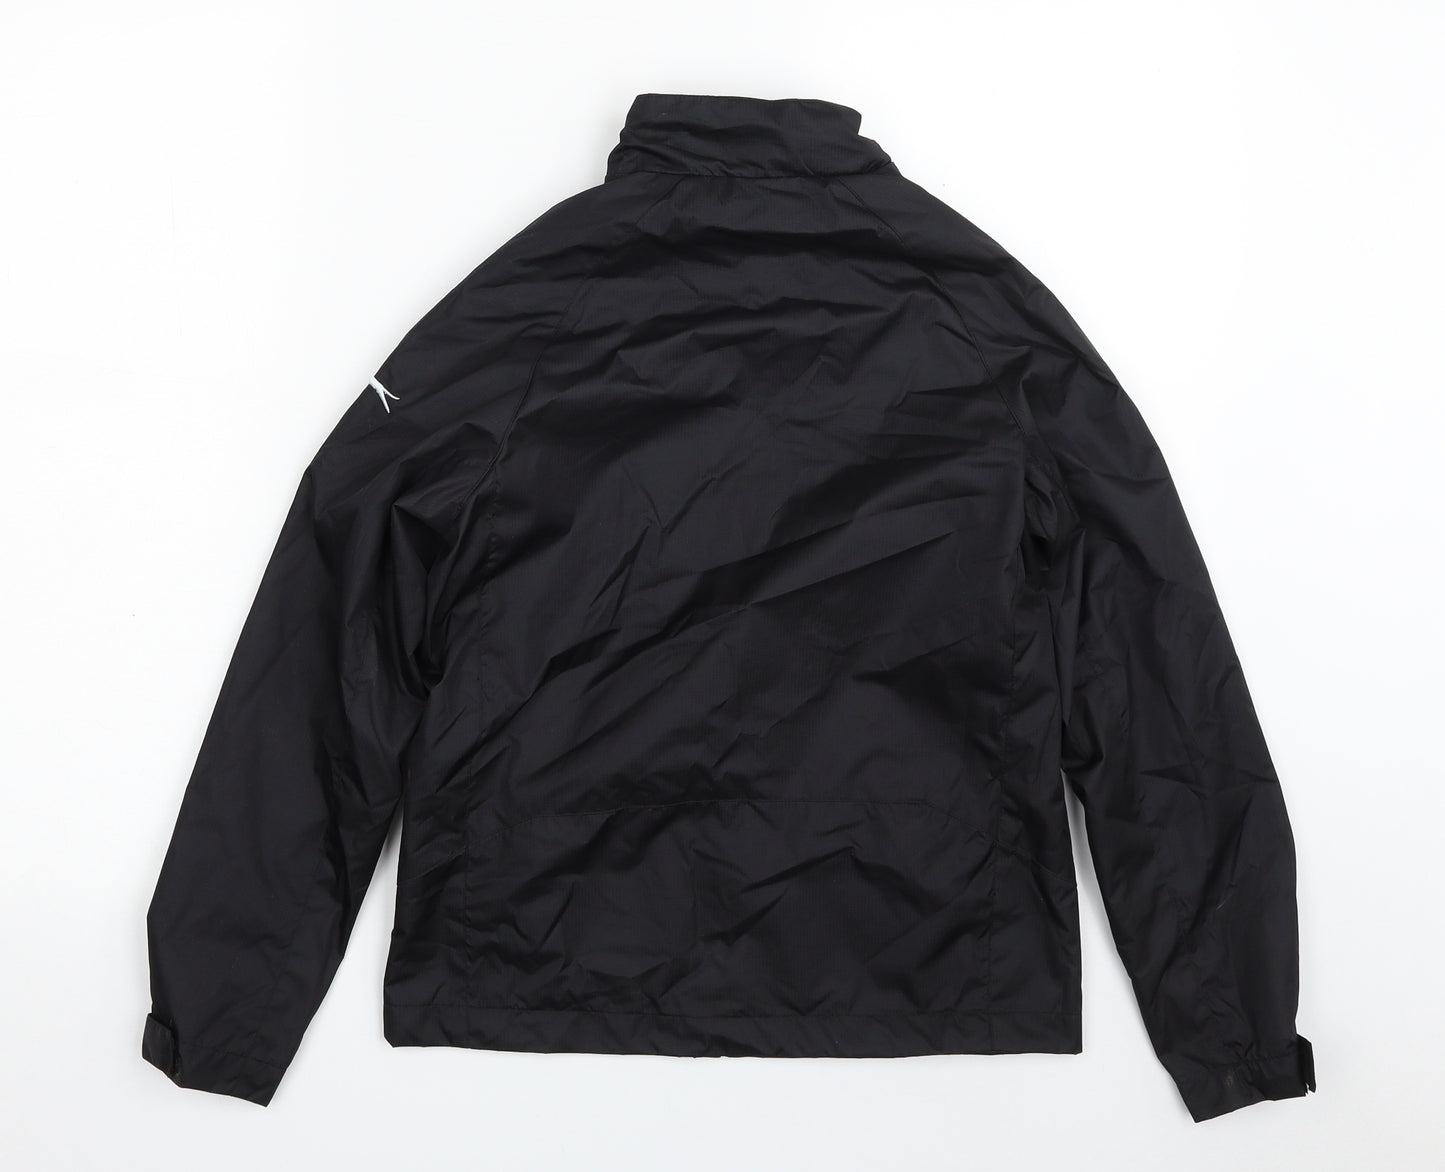 Slazenger Boys Black   Jacket  Size 9-10 Years  Zip